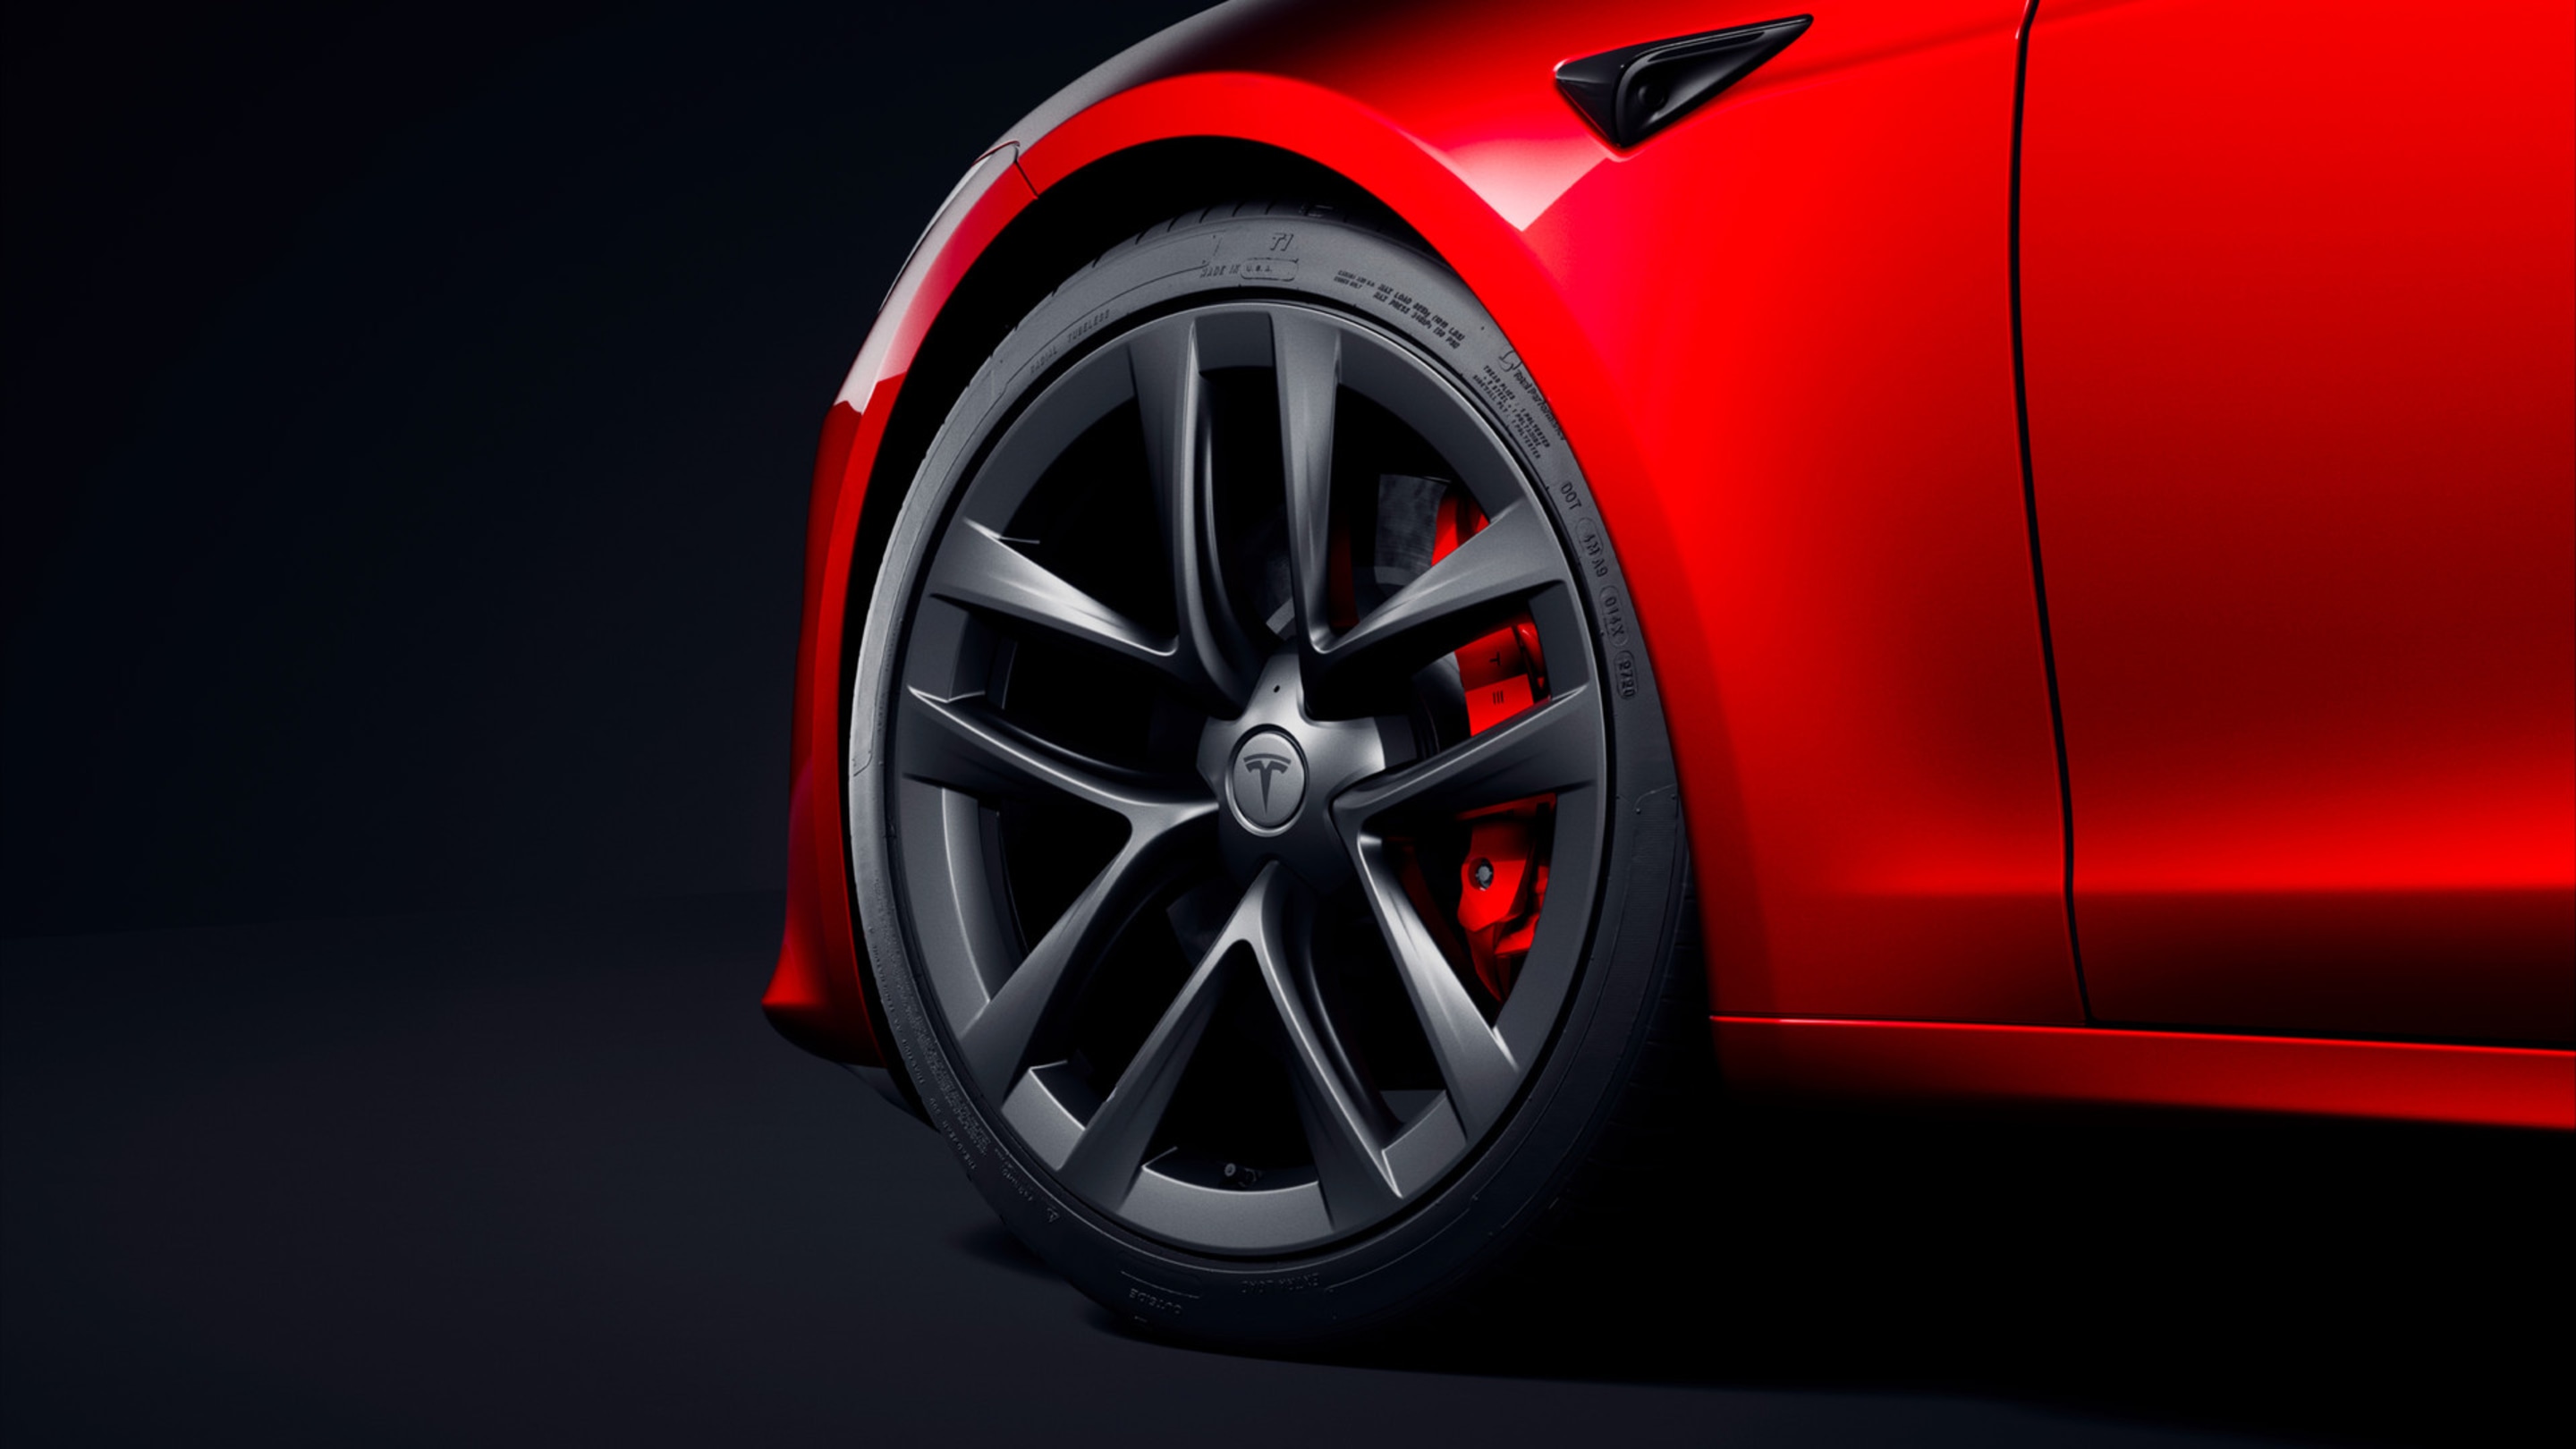 Roata din stânga față a unui vehicul Model S roșu